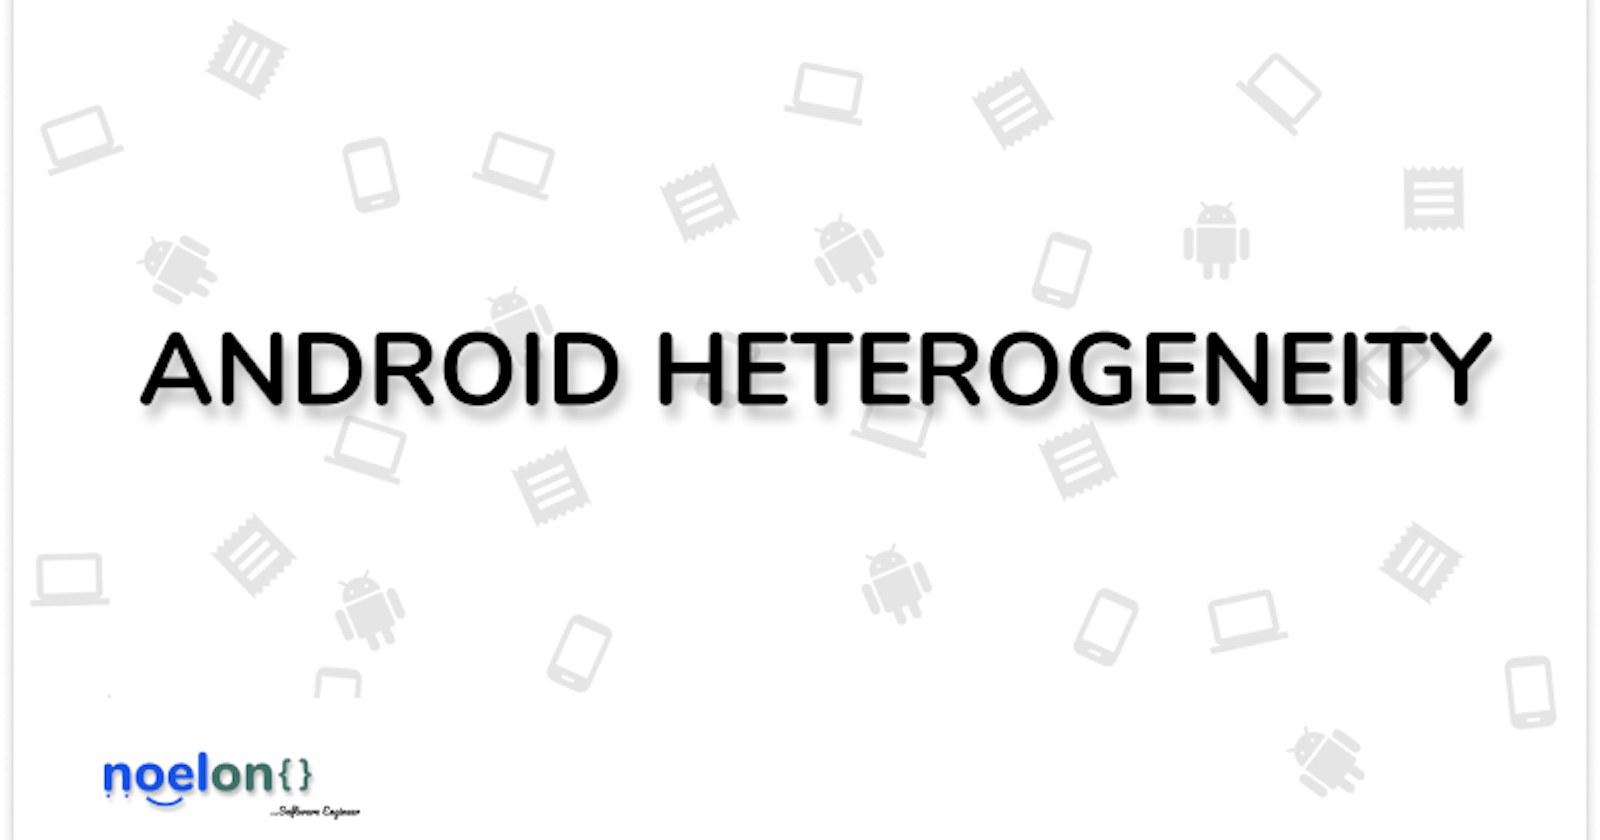 Android Heterogeneity